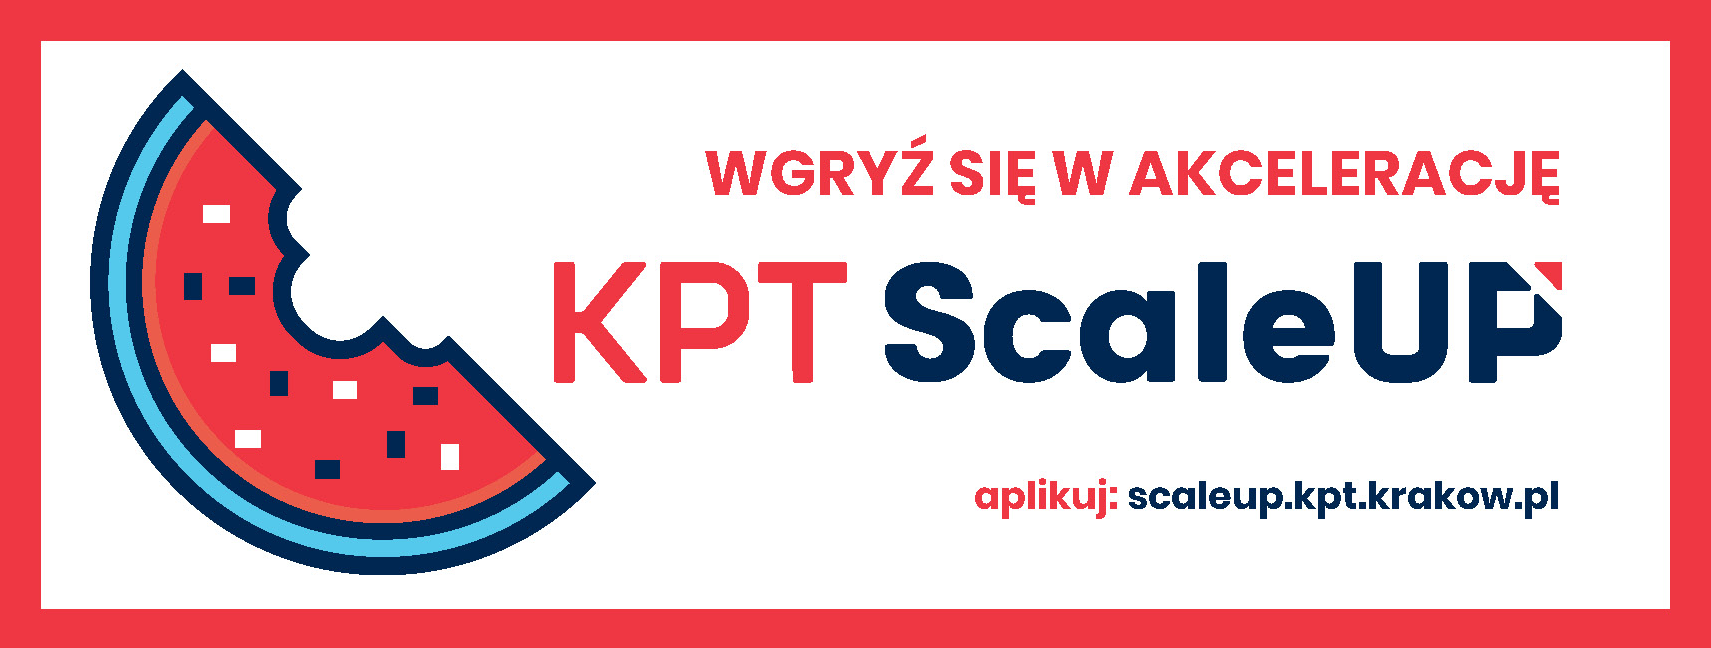 Rekrutacja do kolejnej edycji Programu Akceleracji KPT ScaleUp